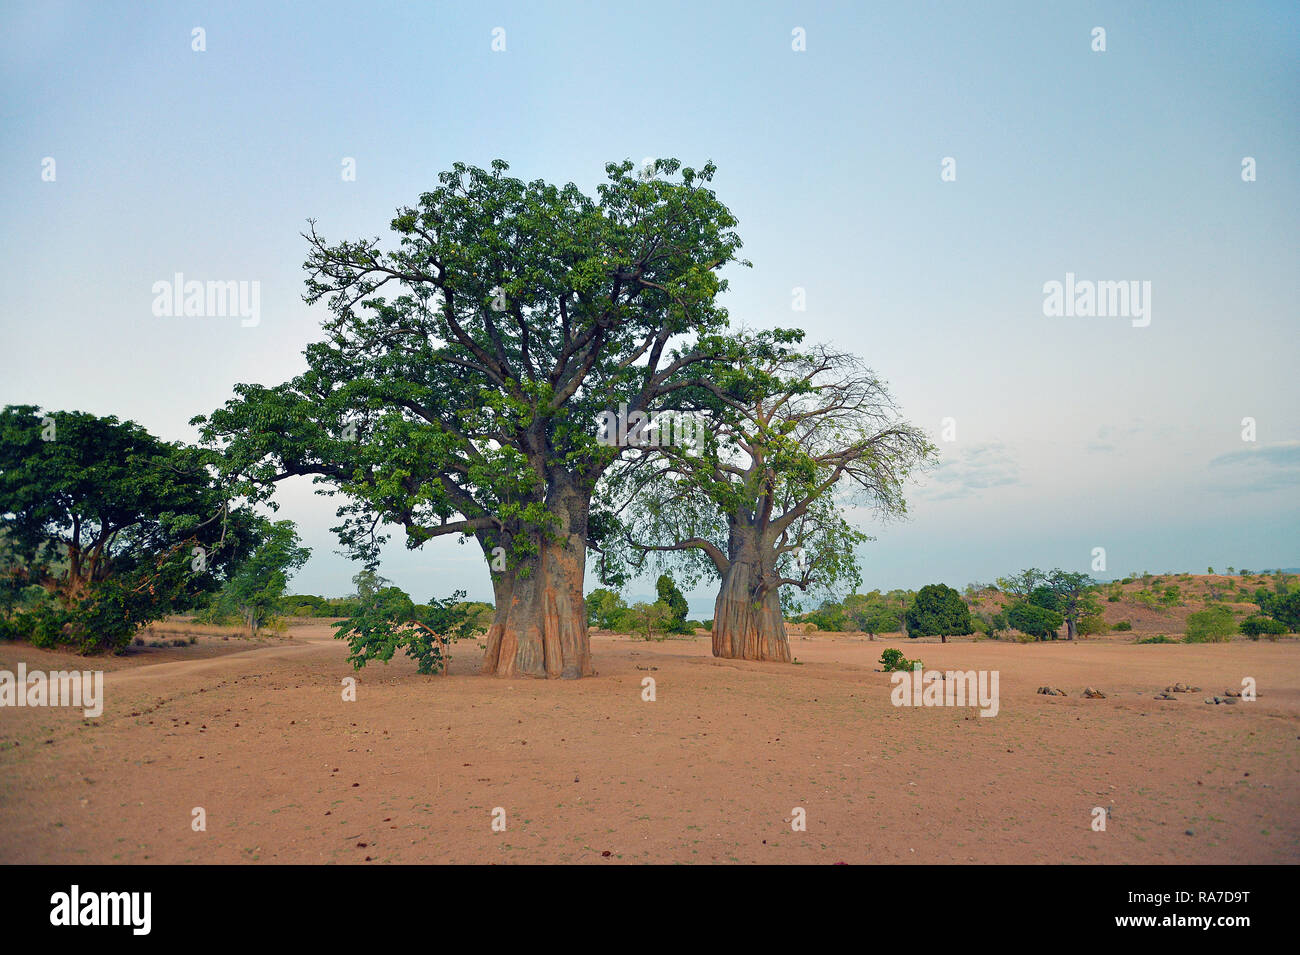 (Baobab Adansonia digitata) auch Affenbrotbaum oder Afrikanischer Affenbrotbaum genannt, Malawi | Baobab (Adansonia digitata), Malawi, Africa Foto Stock